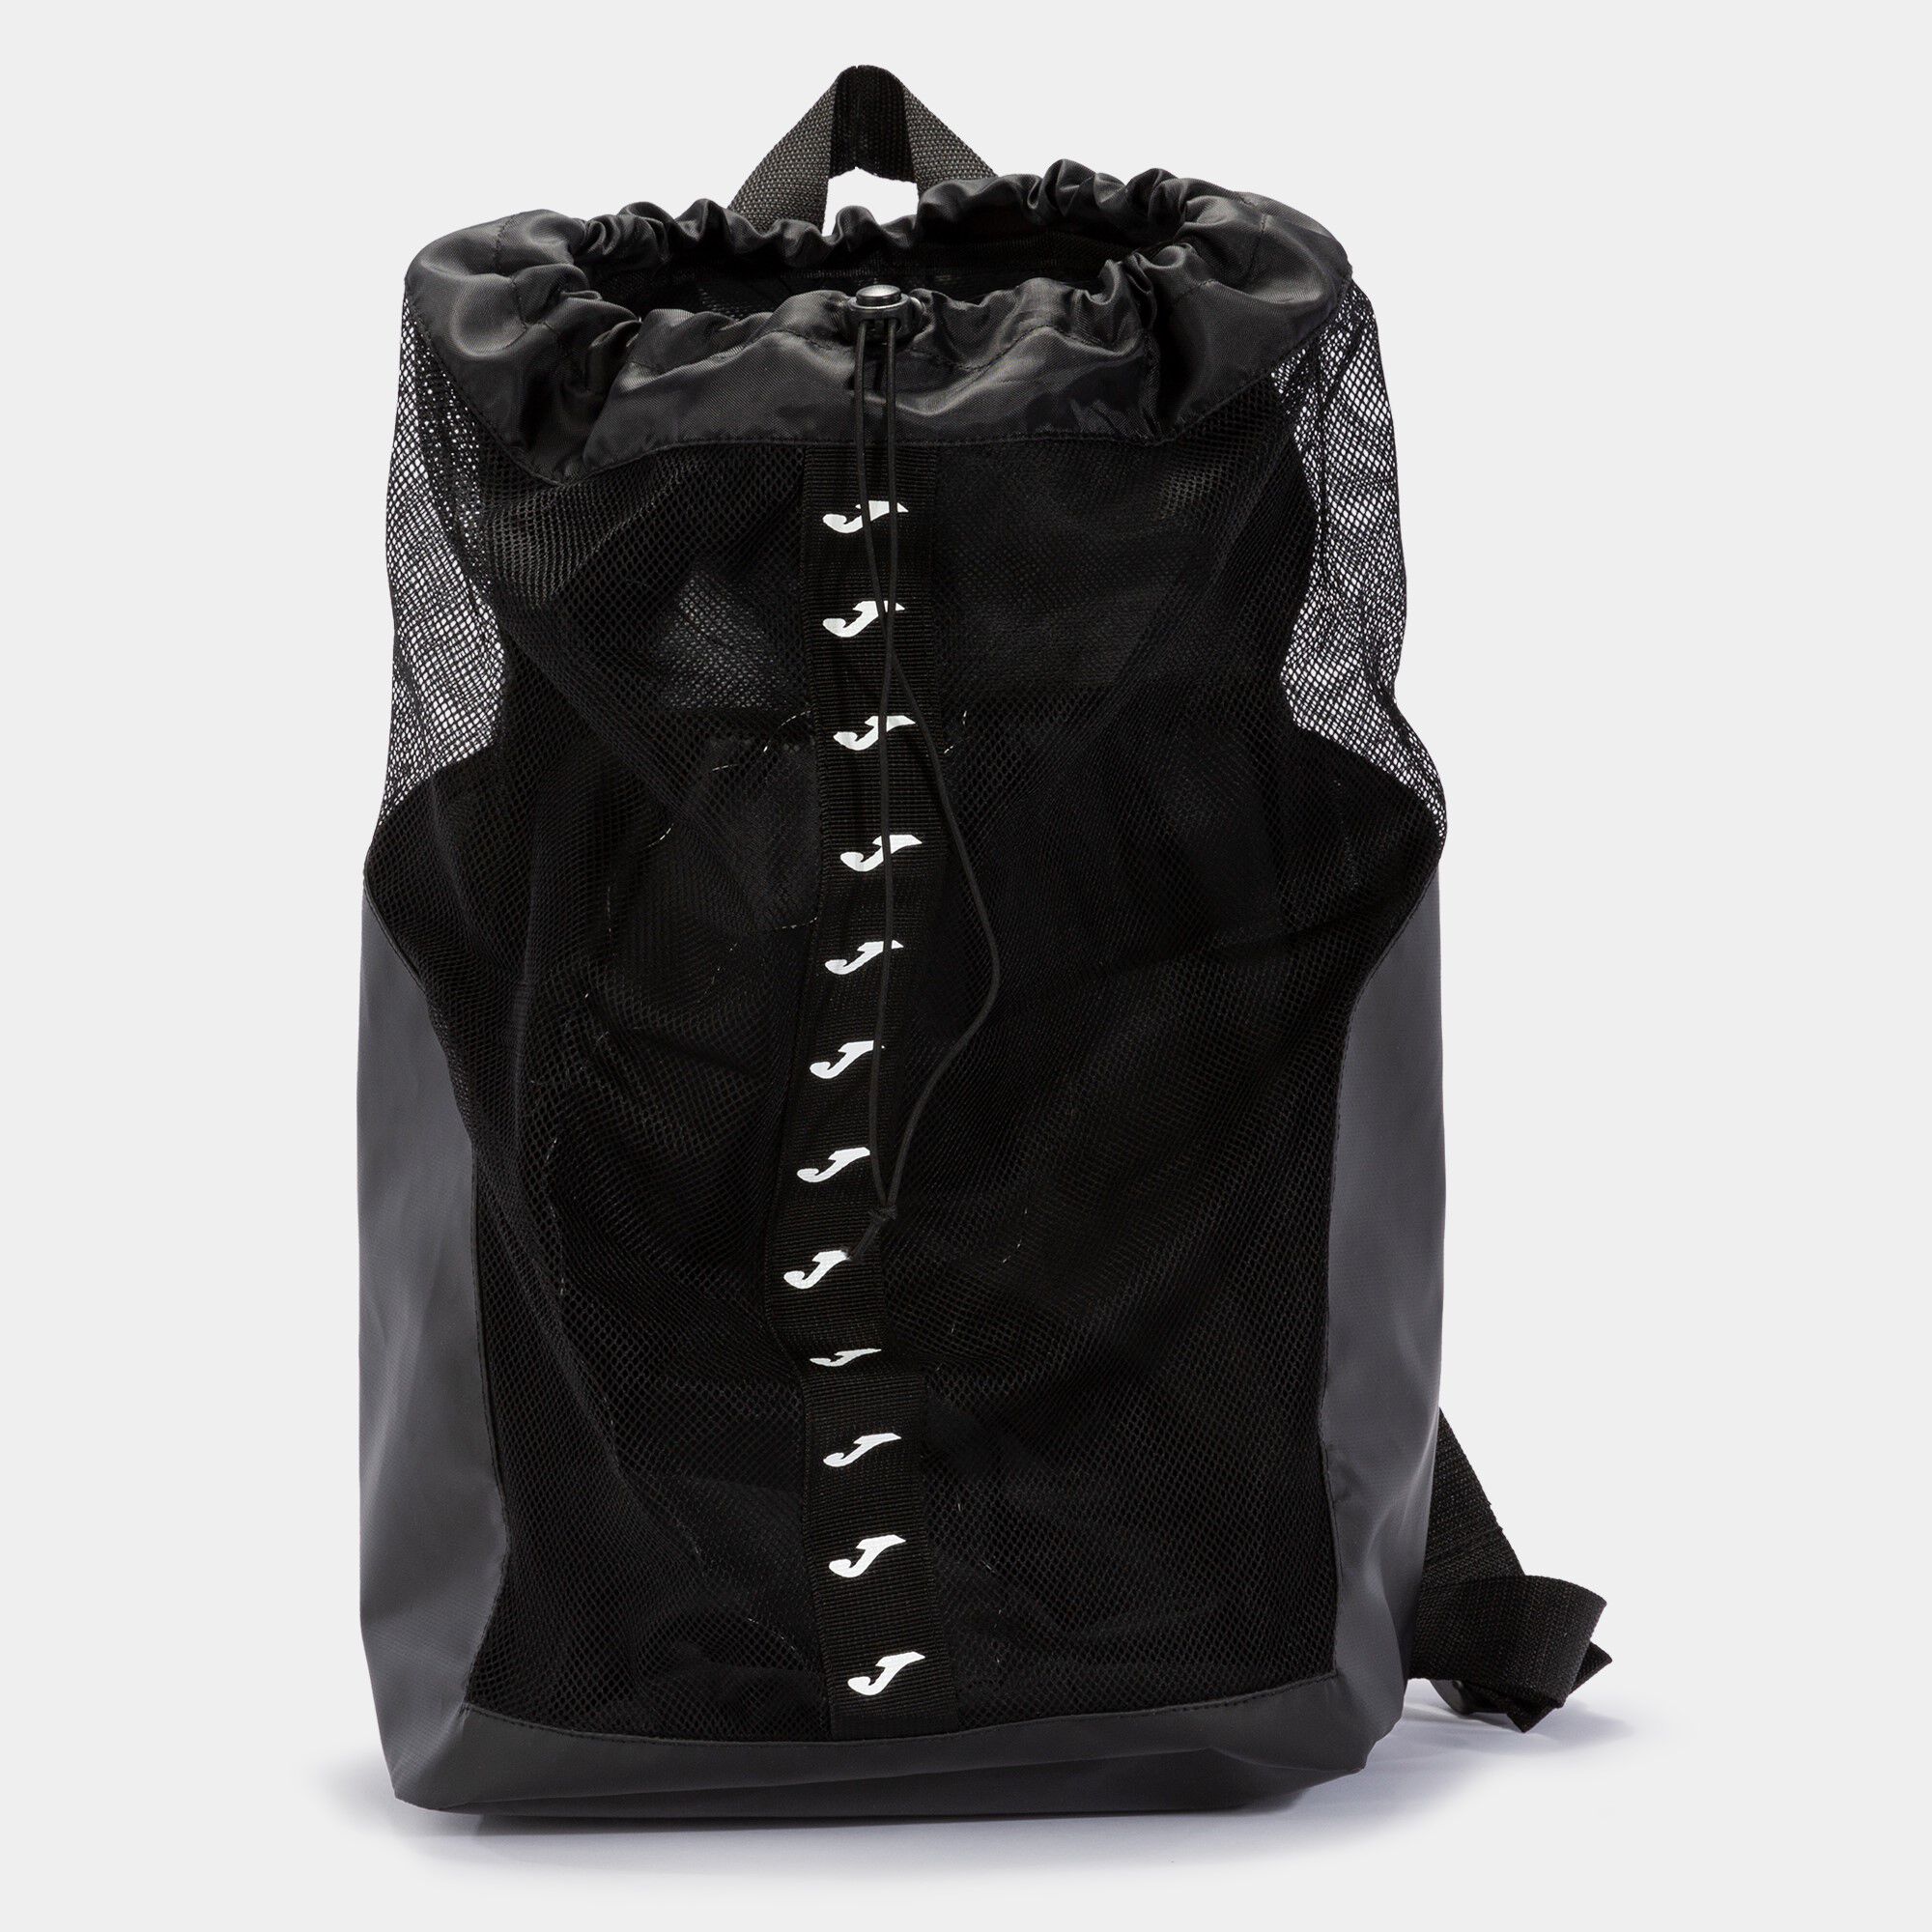 Rucsac-geantă pentru încălțăminte Splash negru